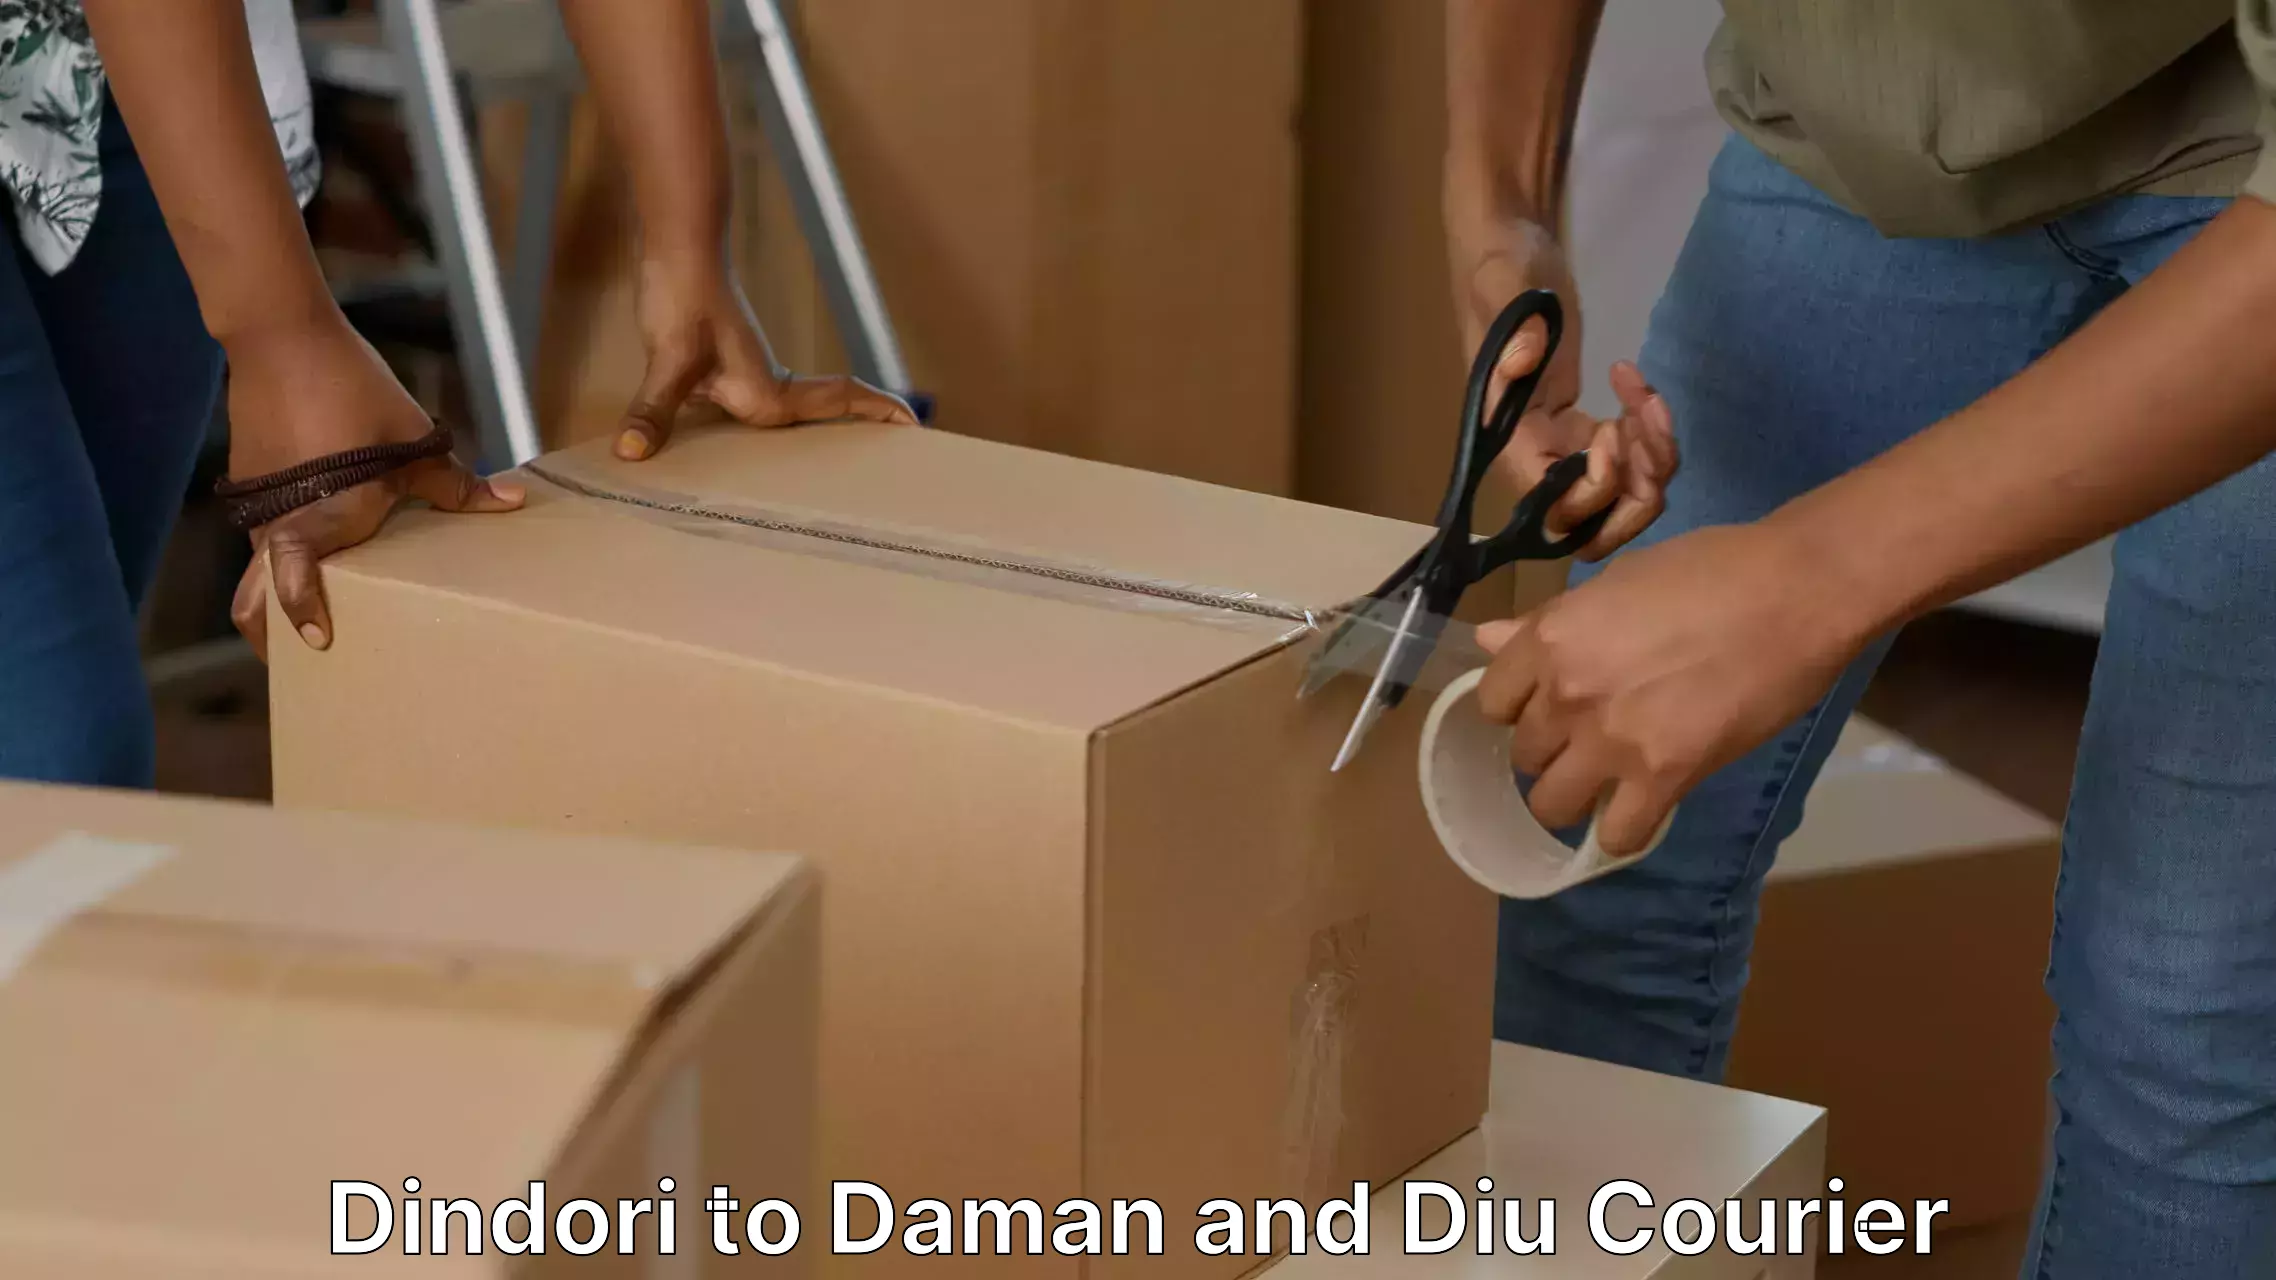 Home goods moving company Dindori to Diu